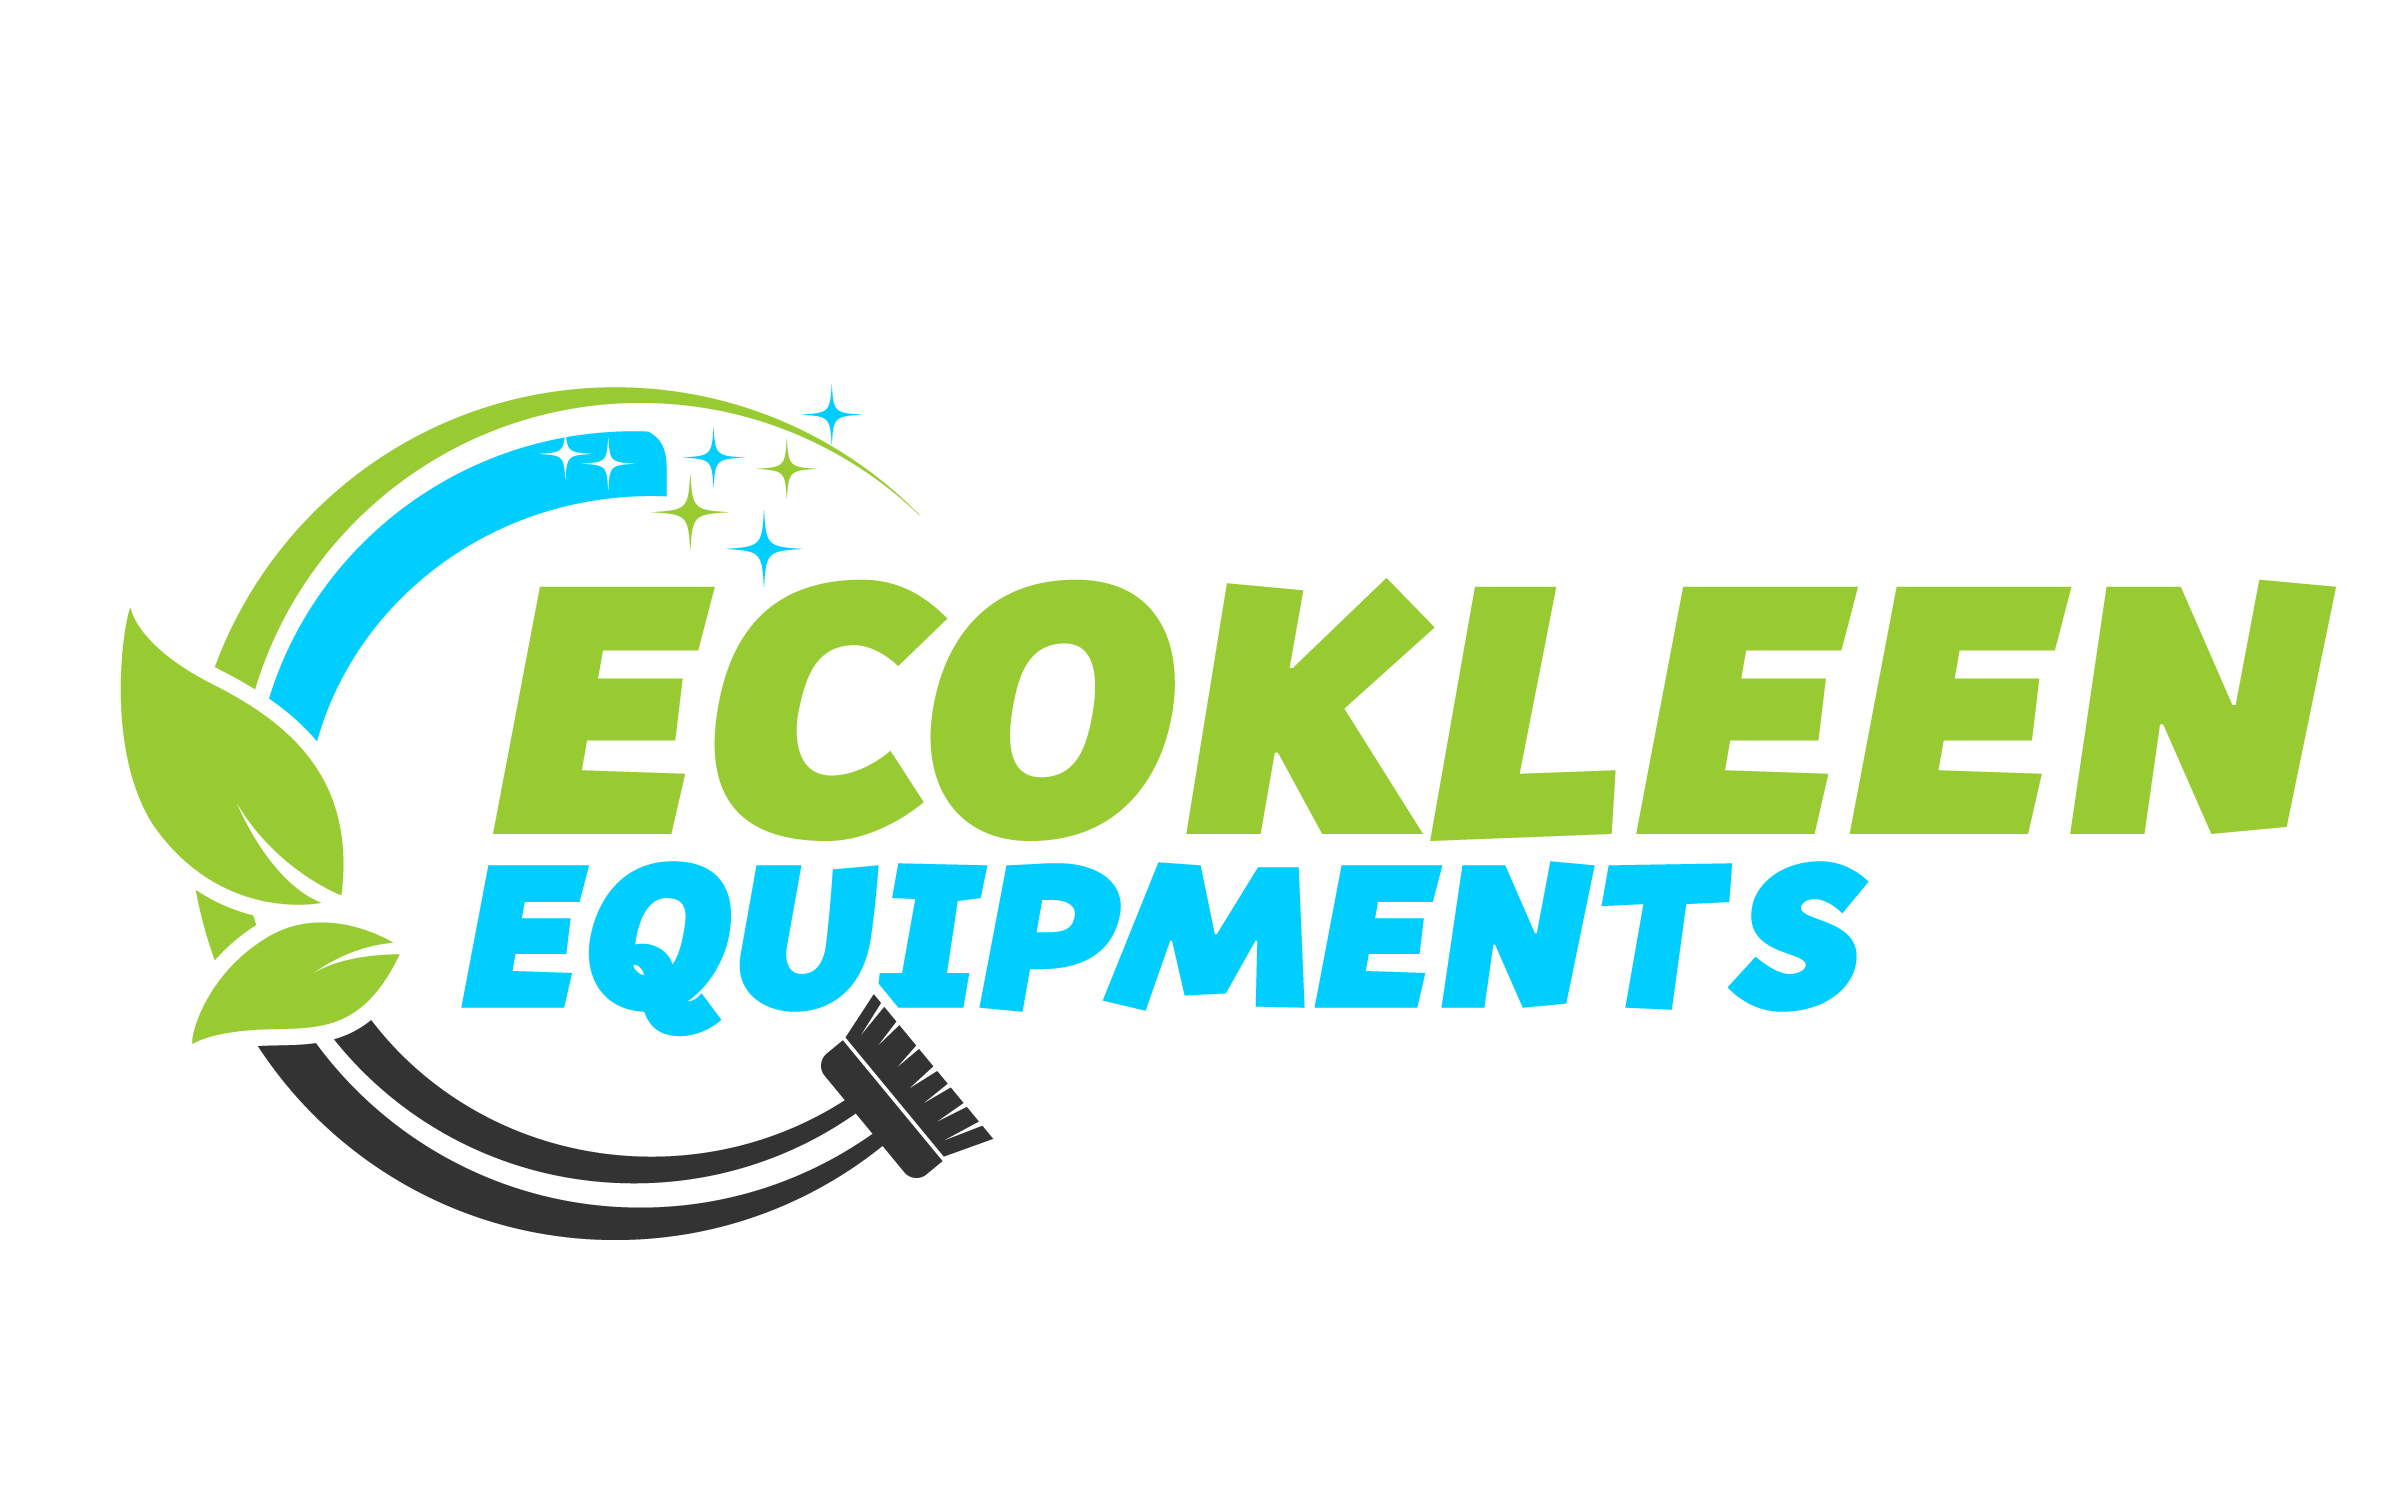 Ecokleen Equipments